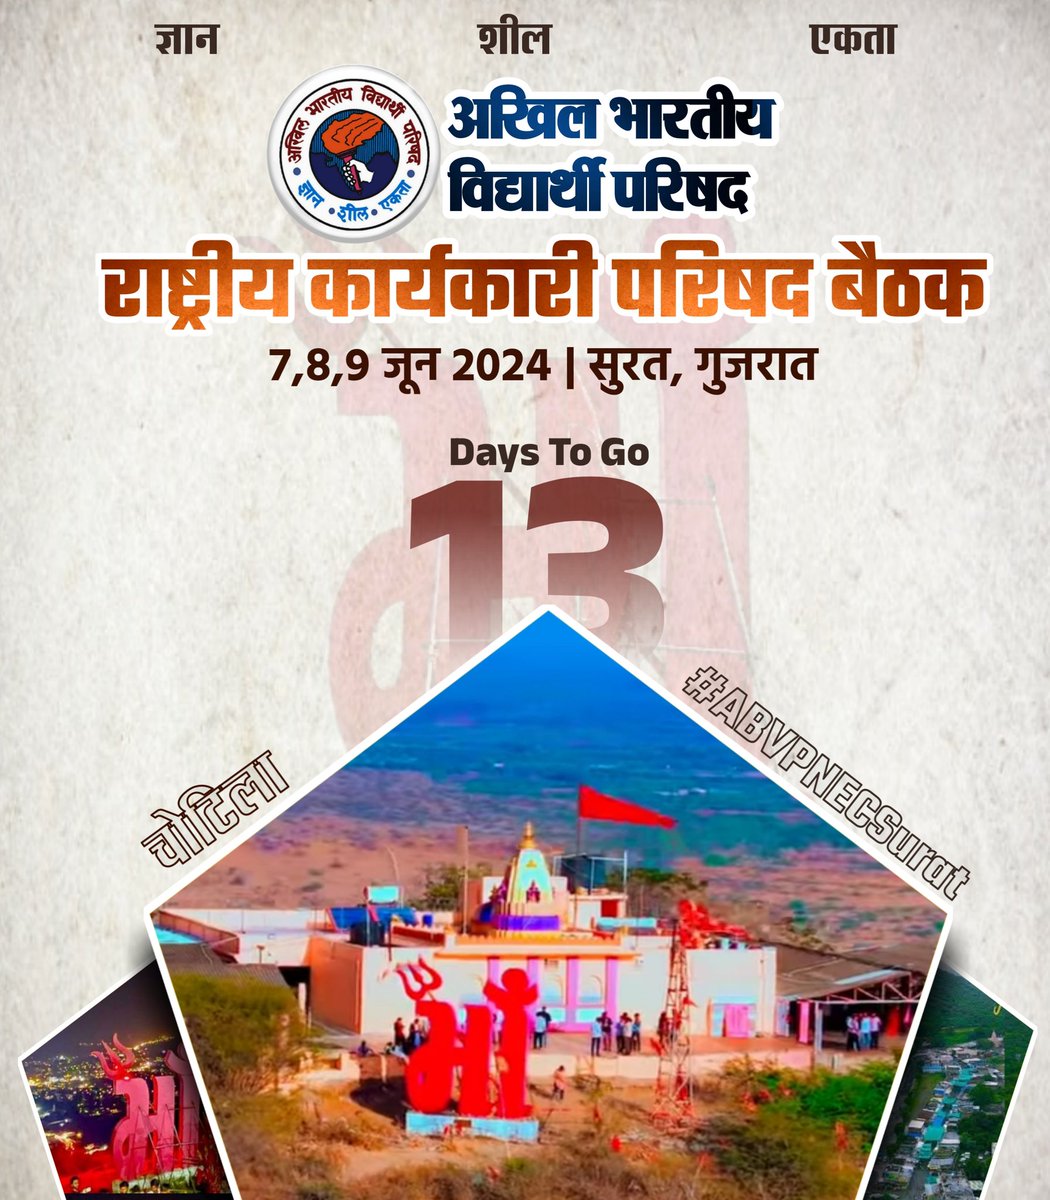 13 Days To Go..... 7, 8, 9 जून को आयोजित होने वाली अखिल भारतीय विद्यार्थी परिषद की राष्ट्रीय कार्यकारी परिषद बैठक में मां चामुंडा की भूमि गुजरात में हार्दिक स्वागत है। #ABVPNECSurat #ABVPGujarat